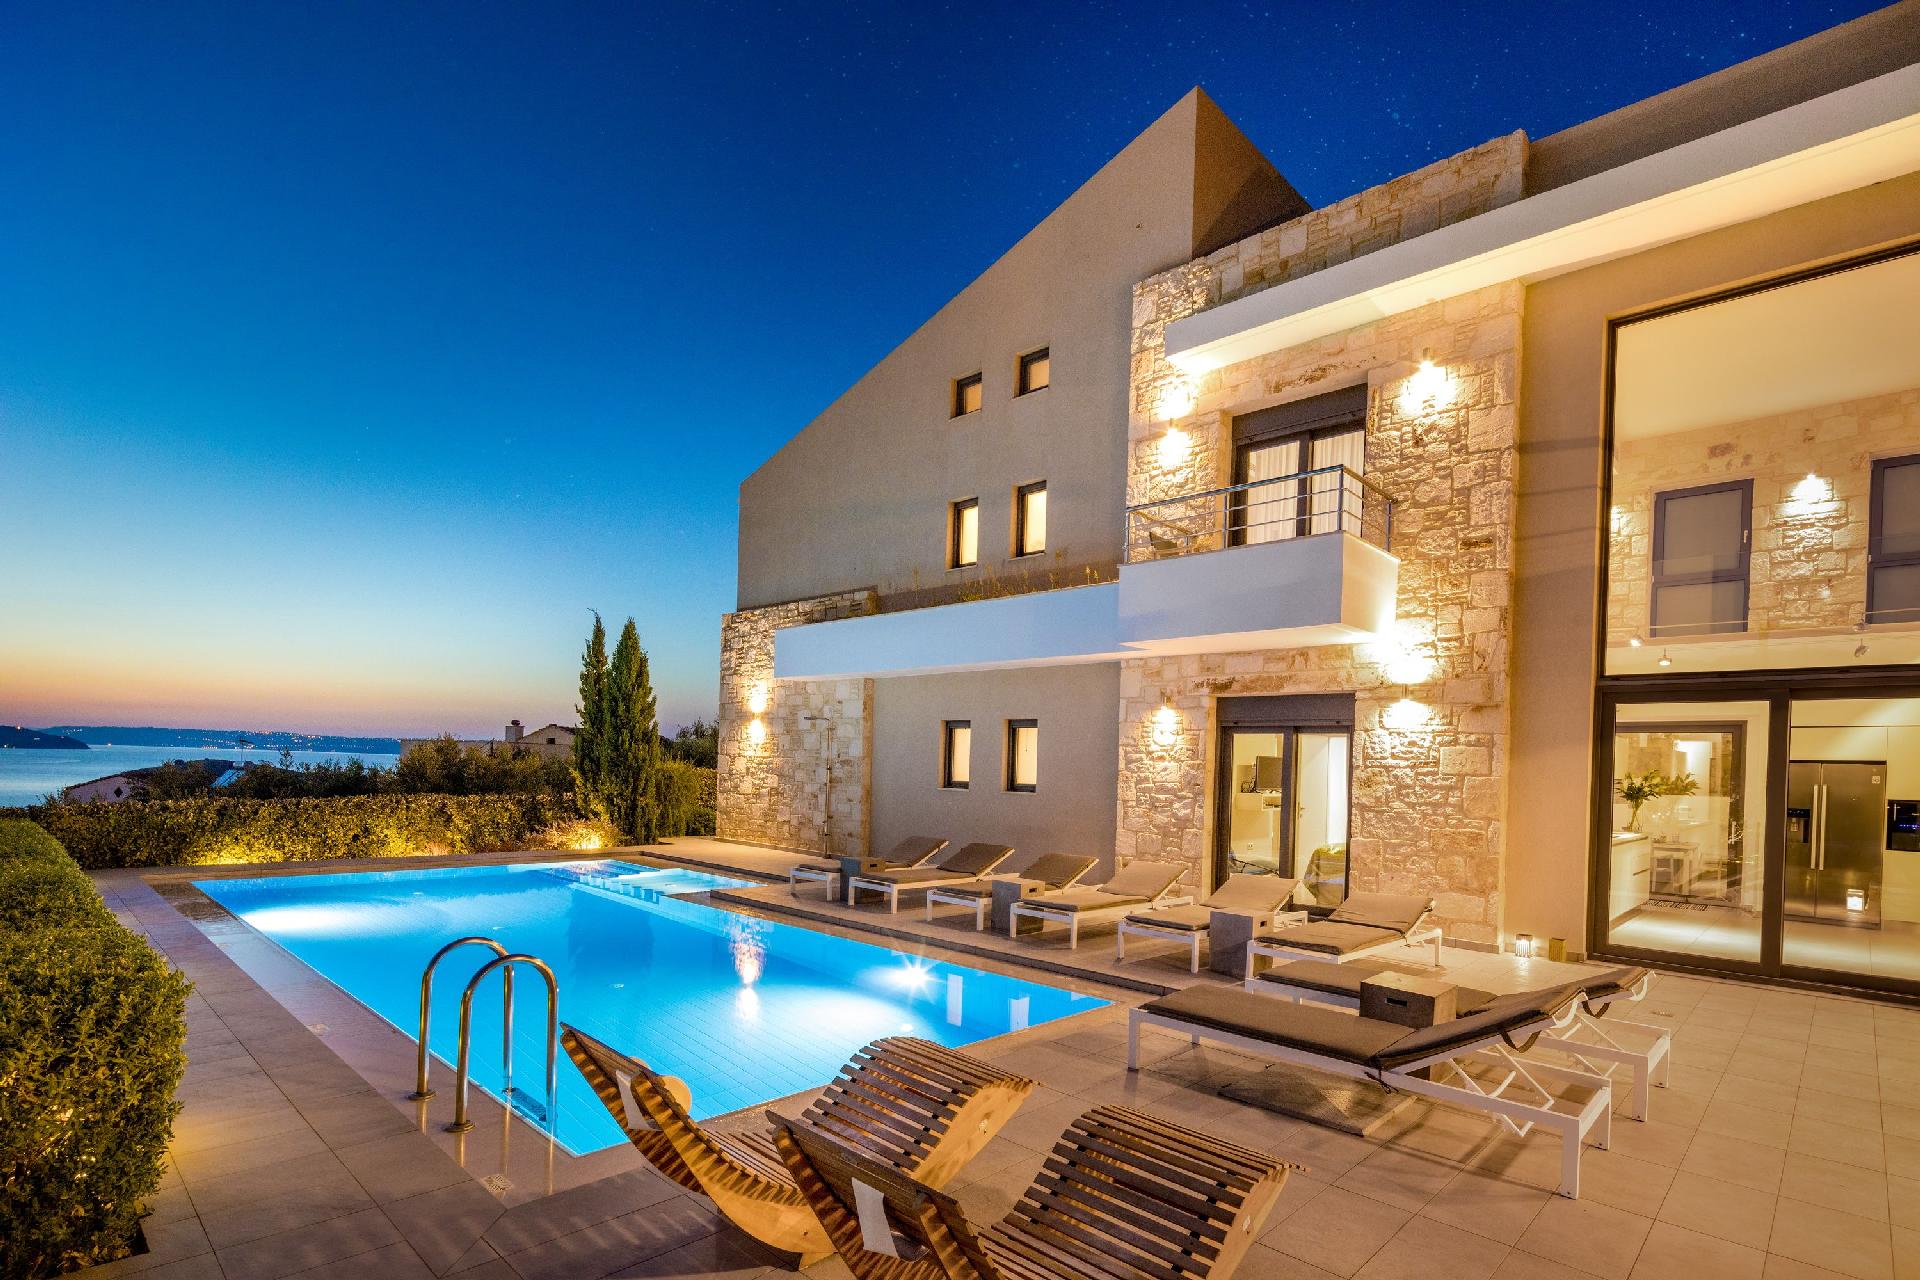 Große, luxuriöse Villa mit Pool und Gar Ferienhaus in Griechenland